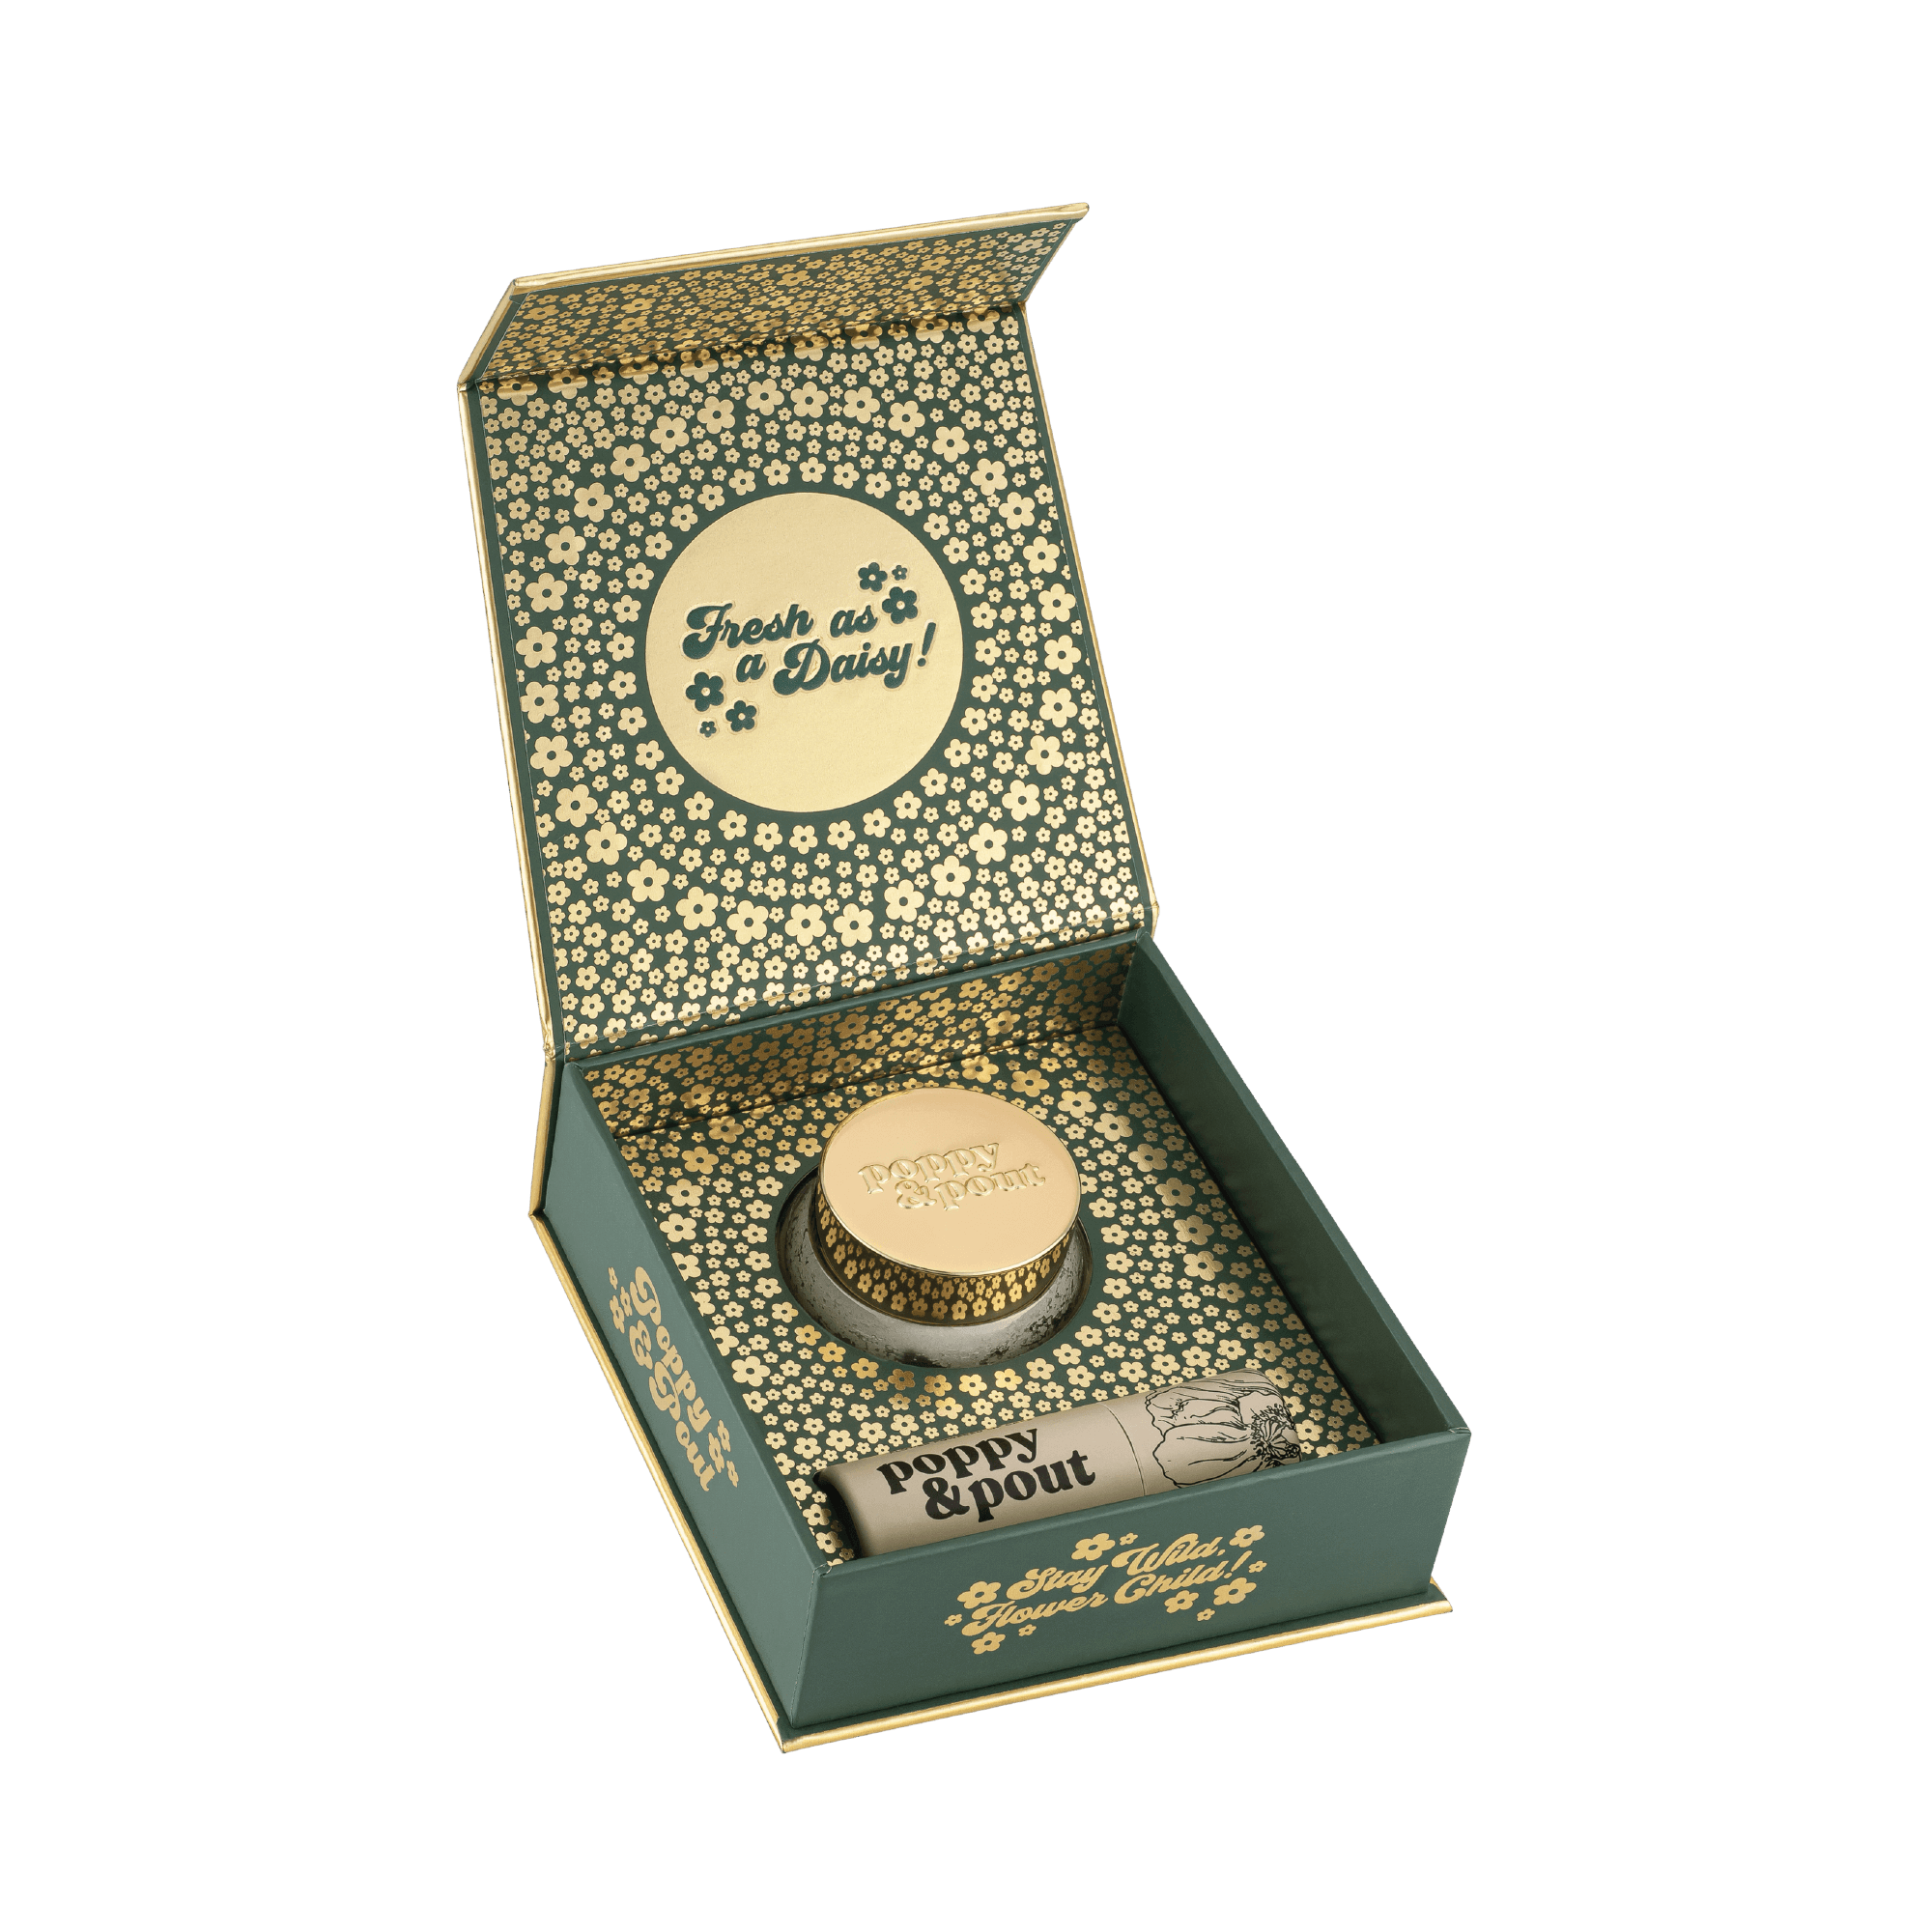 Poppy & Pout Lip Tint Premium Gift Set